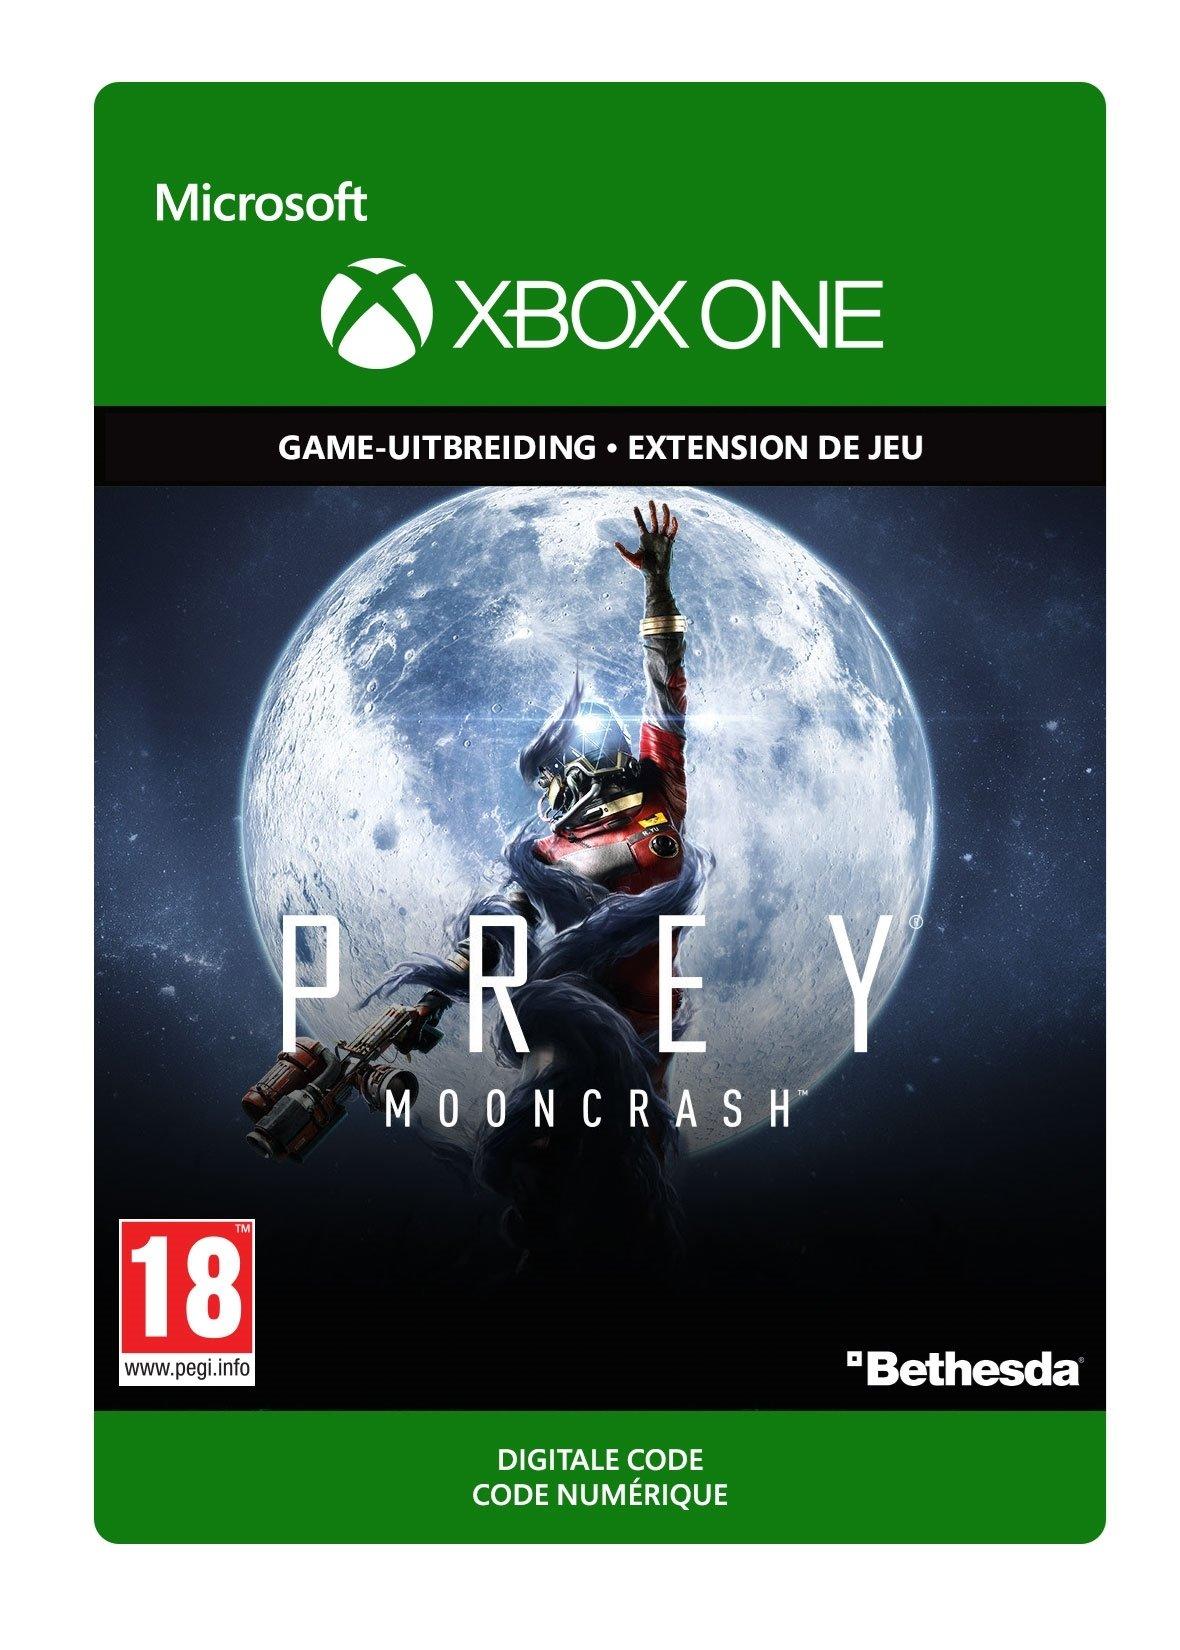 Prey: Mooncrash DLC - Xbox One - Add-on | 7D4-00317 (029ccd7f-3cdc-9343-88a9-7c20980543c9)